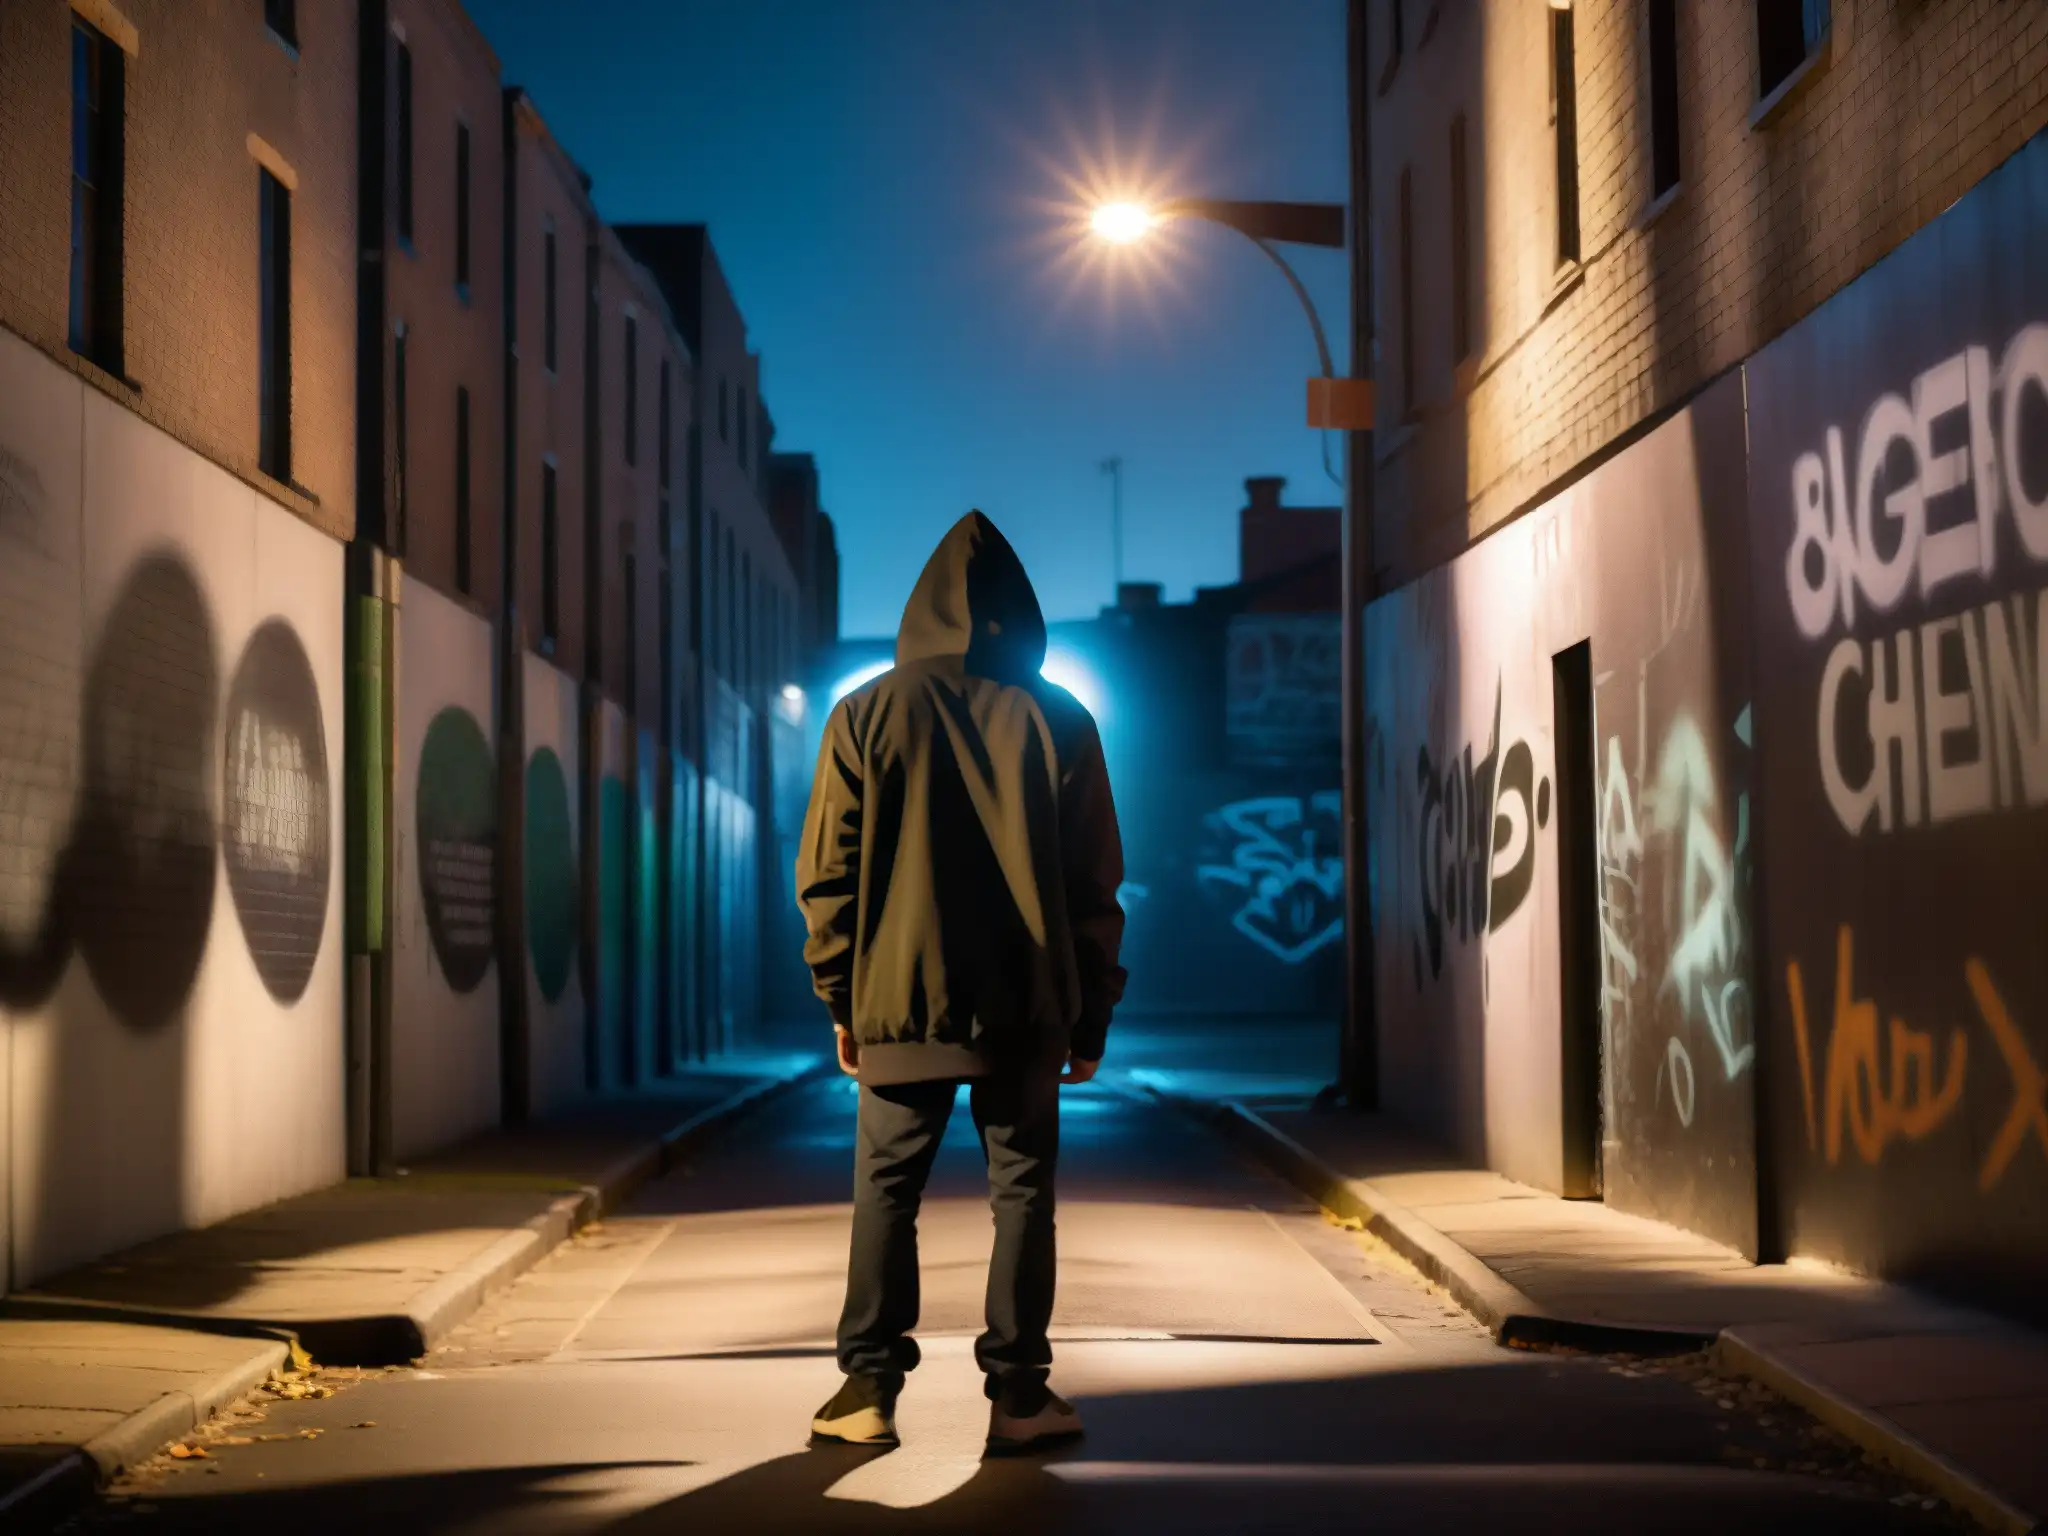 Una misteriosa calle urbana de noche, con una pared llena de grafitis y una luz de farola parpadeante